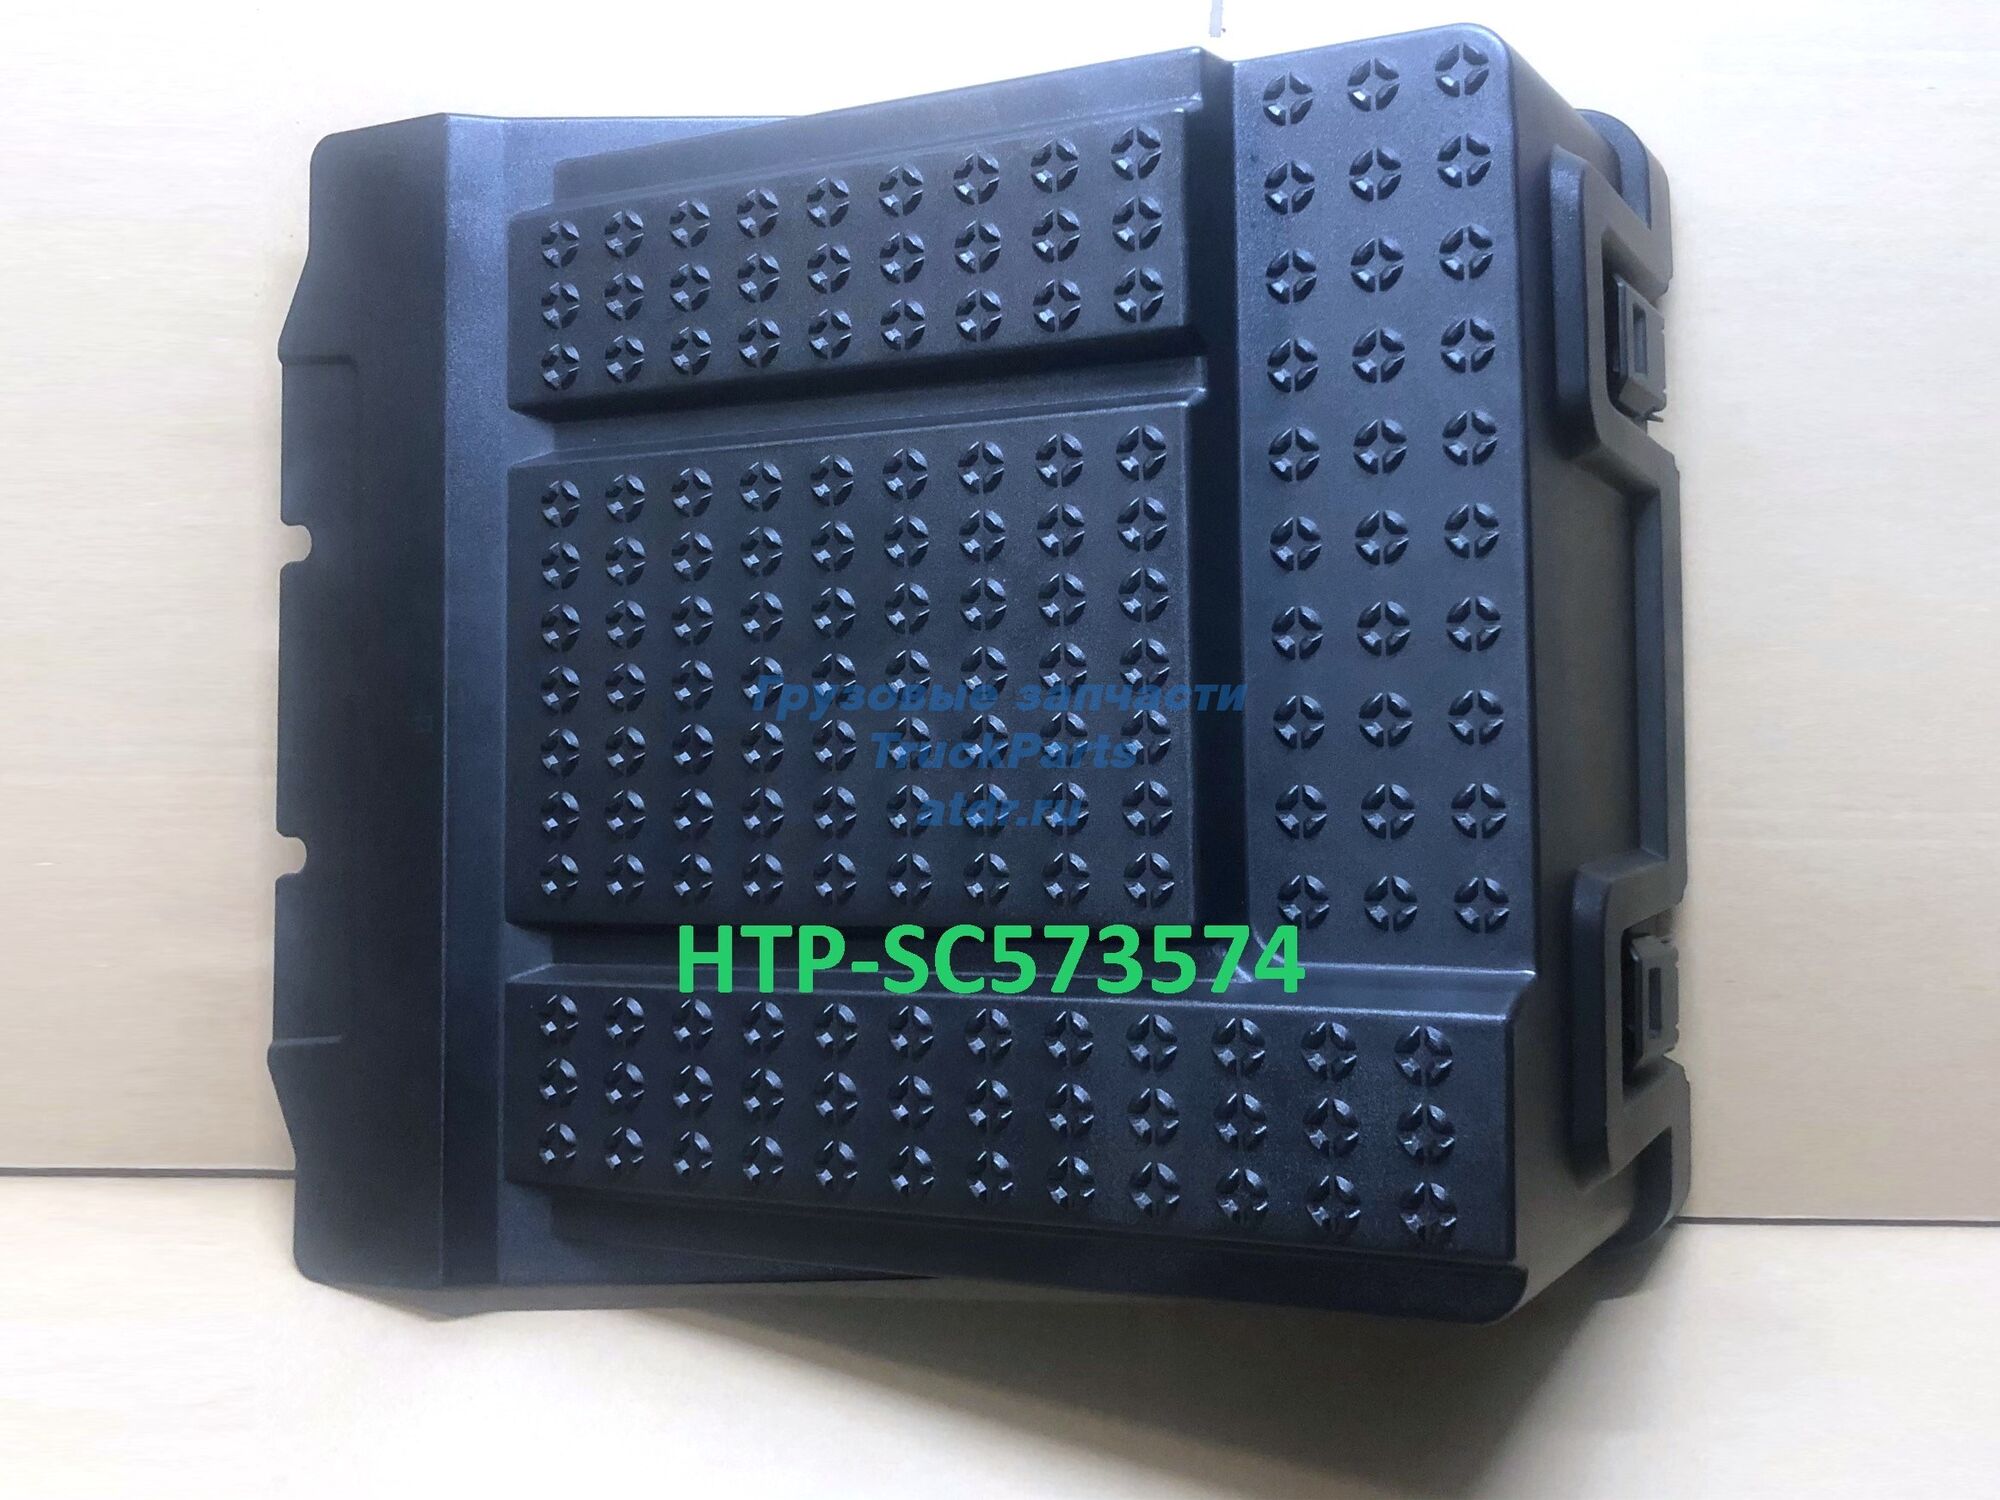 Крышка АКБ для Скания 6 серии HTP HTP-SC573574